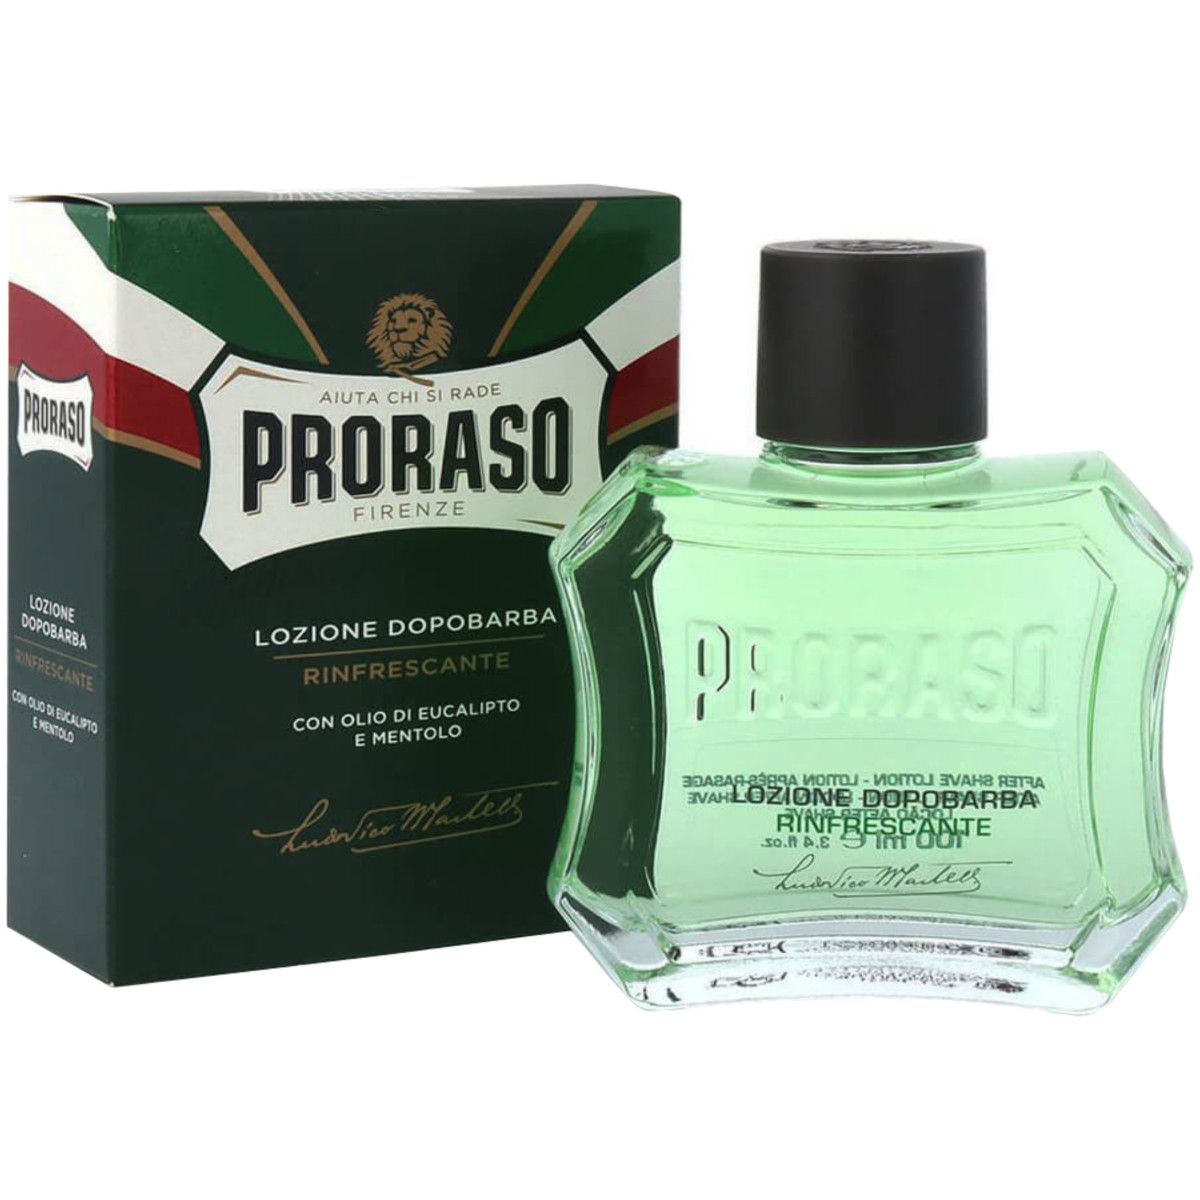 Proraso Refreshing Aftershave - odświeżający eukaliptusowy płyn po goleniu, 100ml